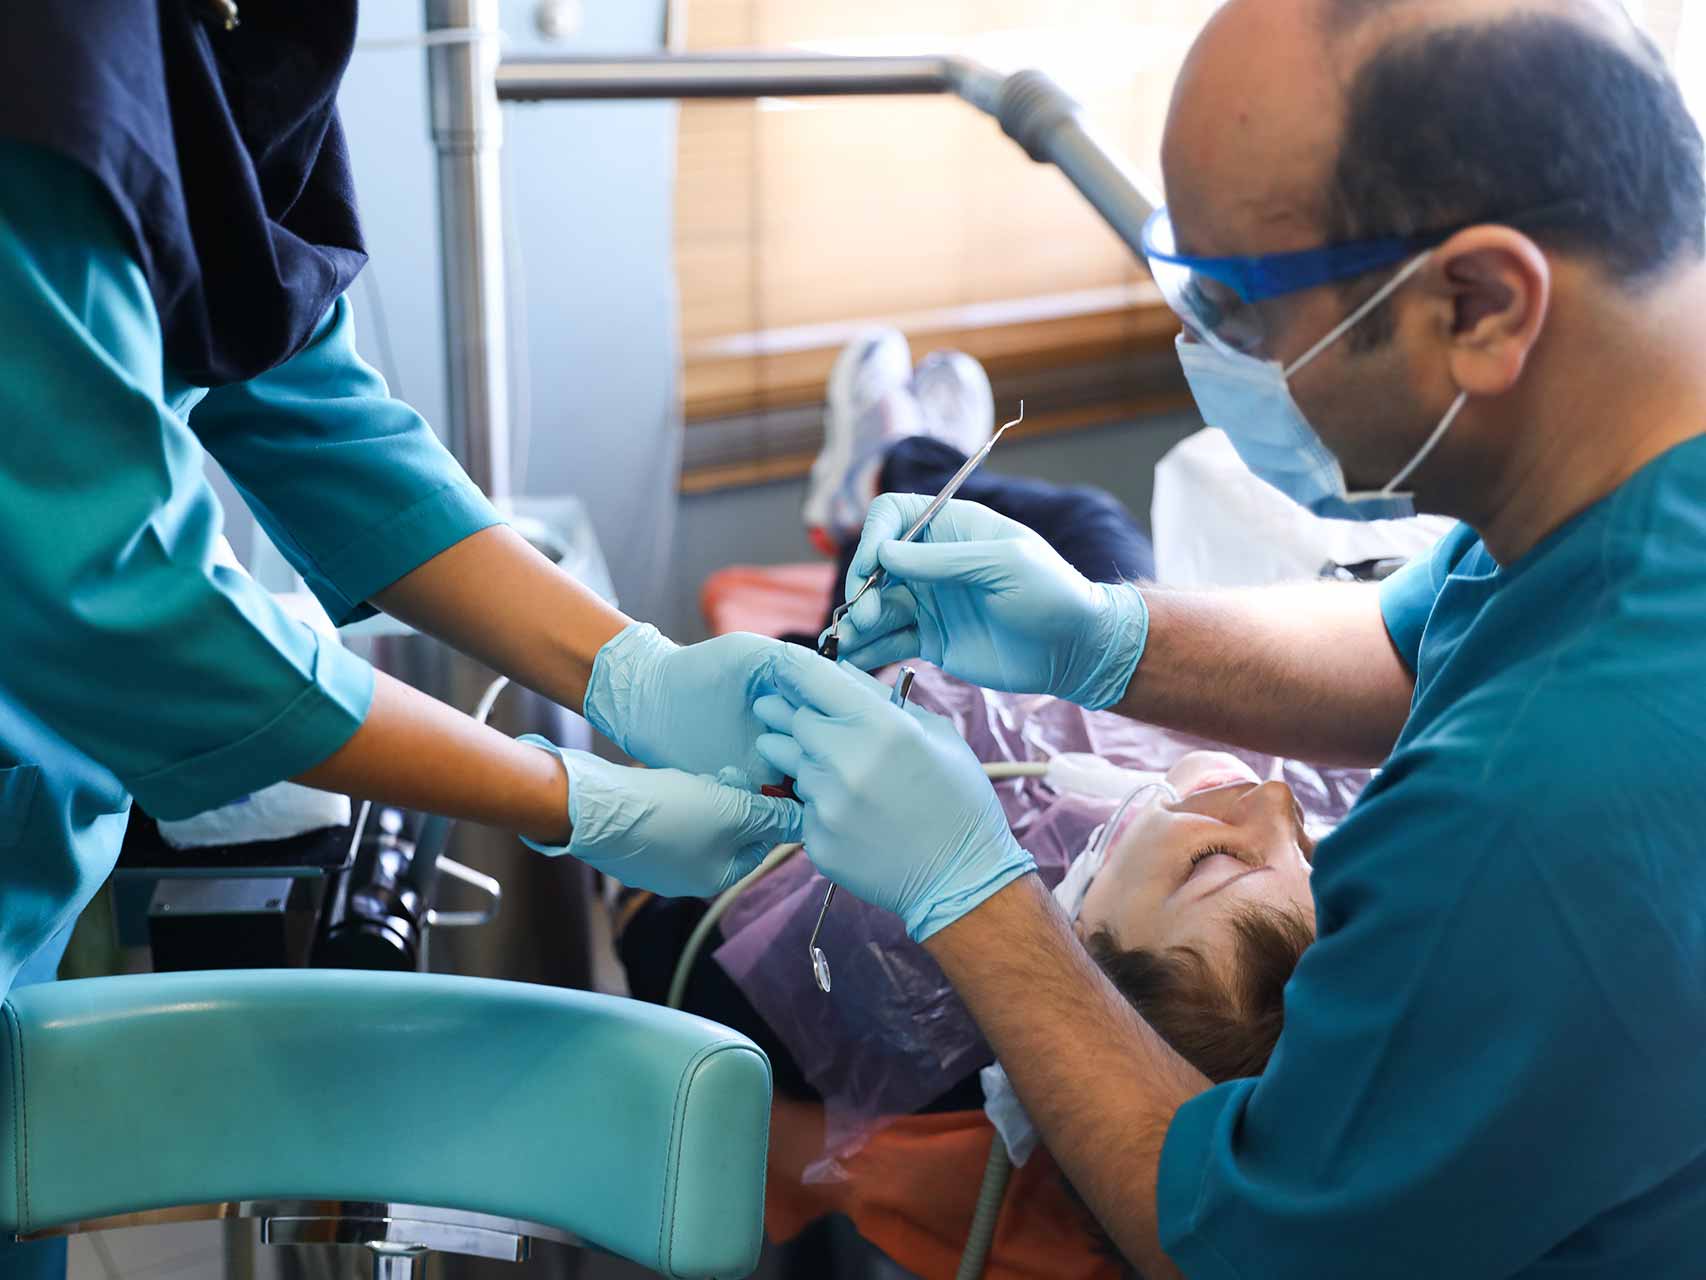 دلیل محبوبیت فسفرپلیت دندانپزشکی نزد پزشکان چیست؟